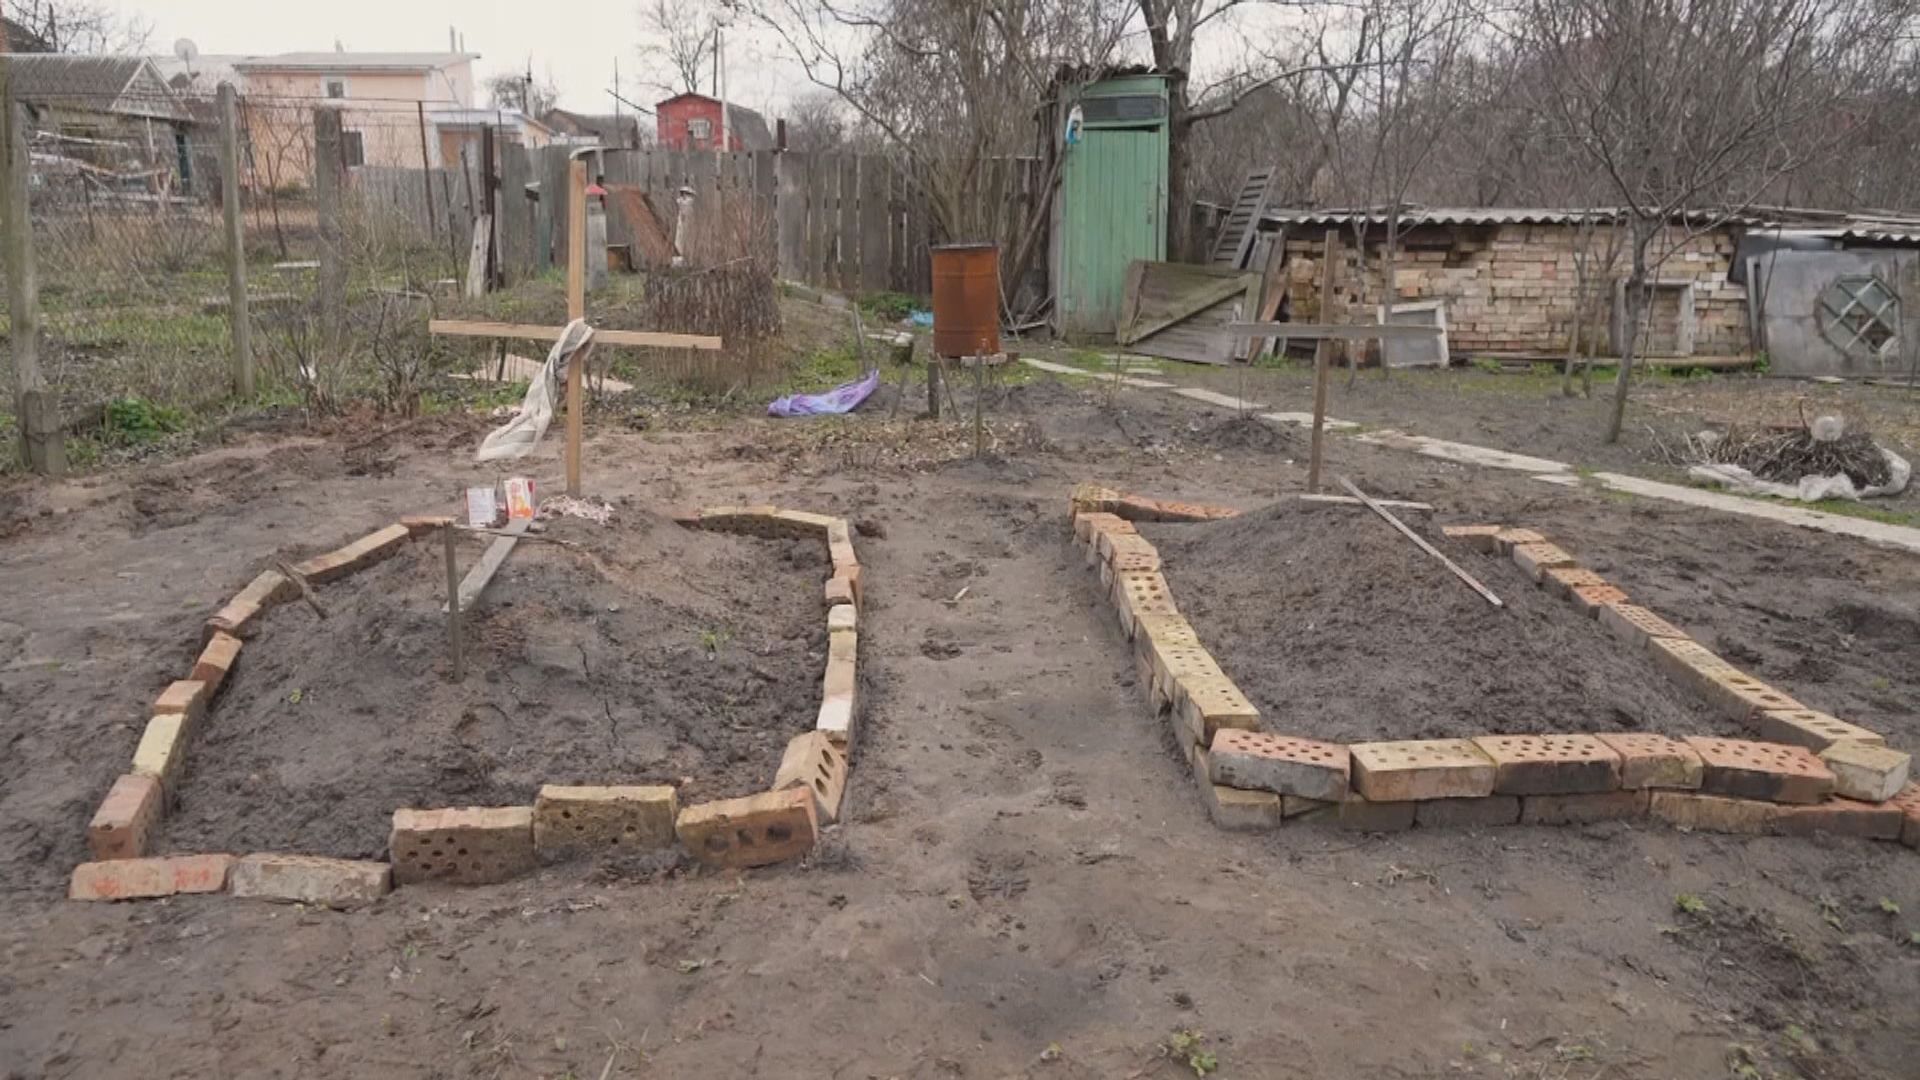 烏克蘭當局指再有基輔附近村莊發現平民亂葬崗